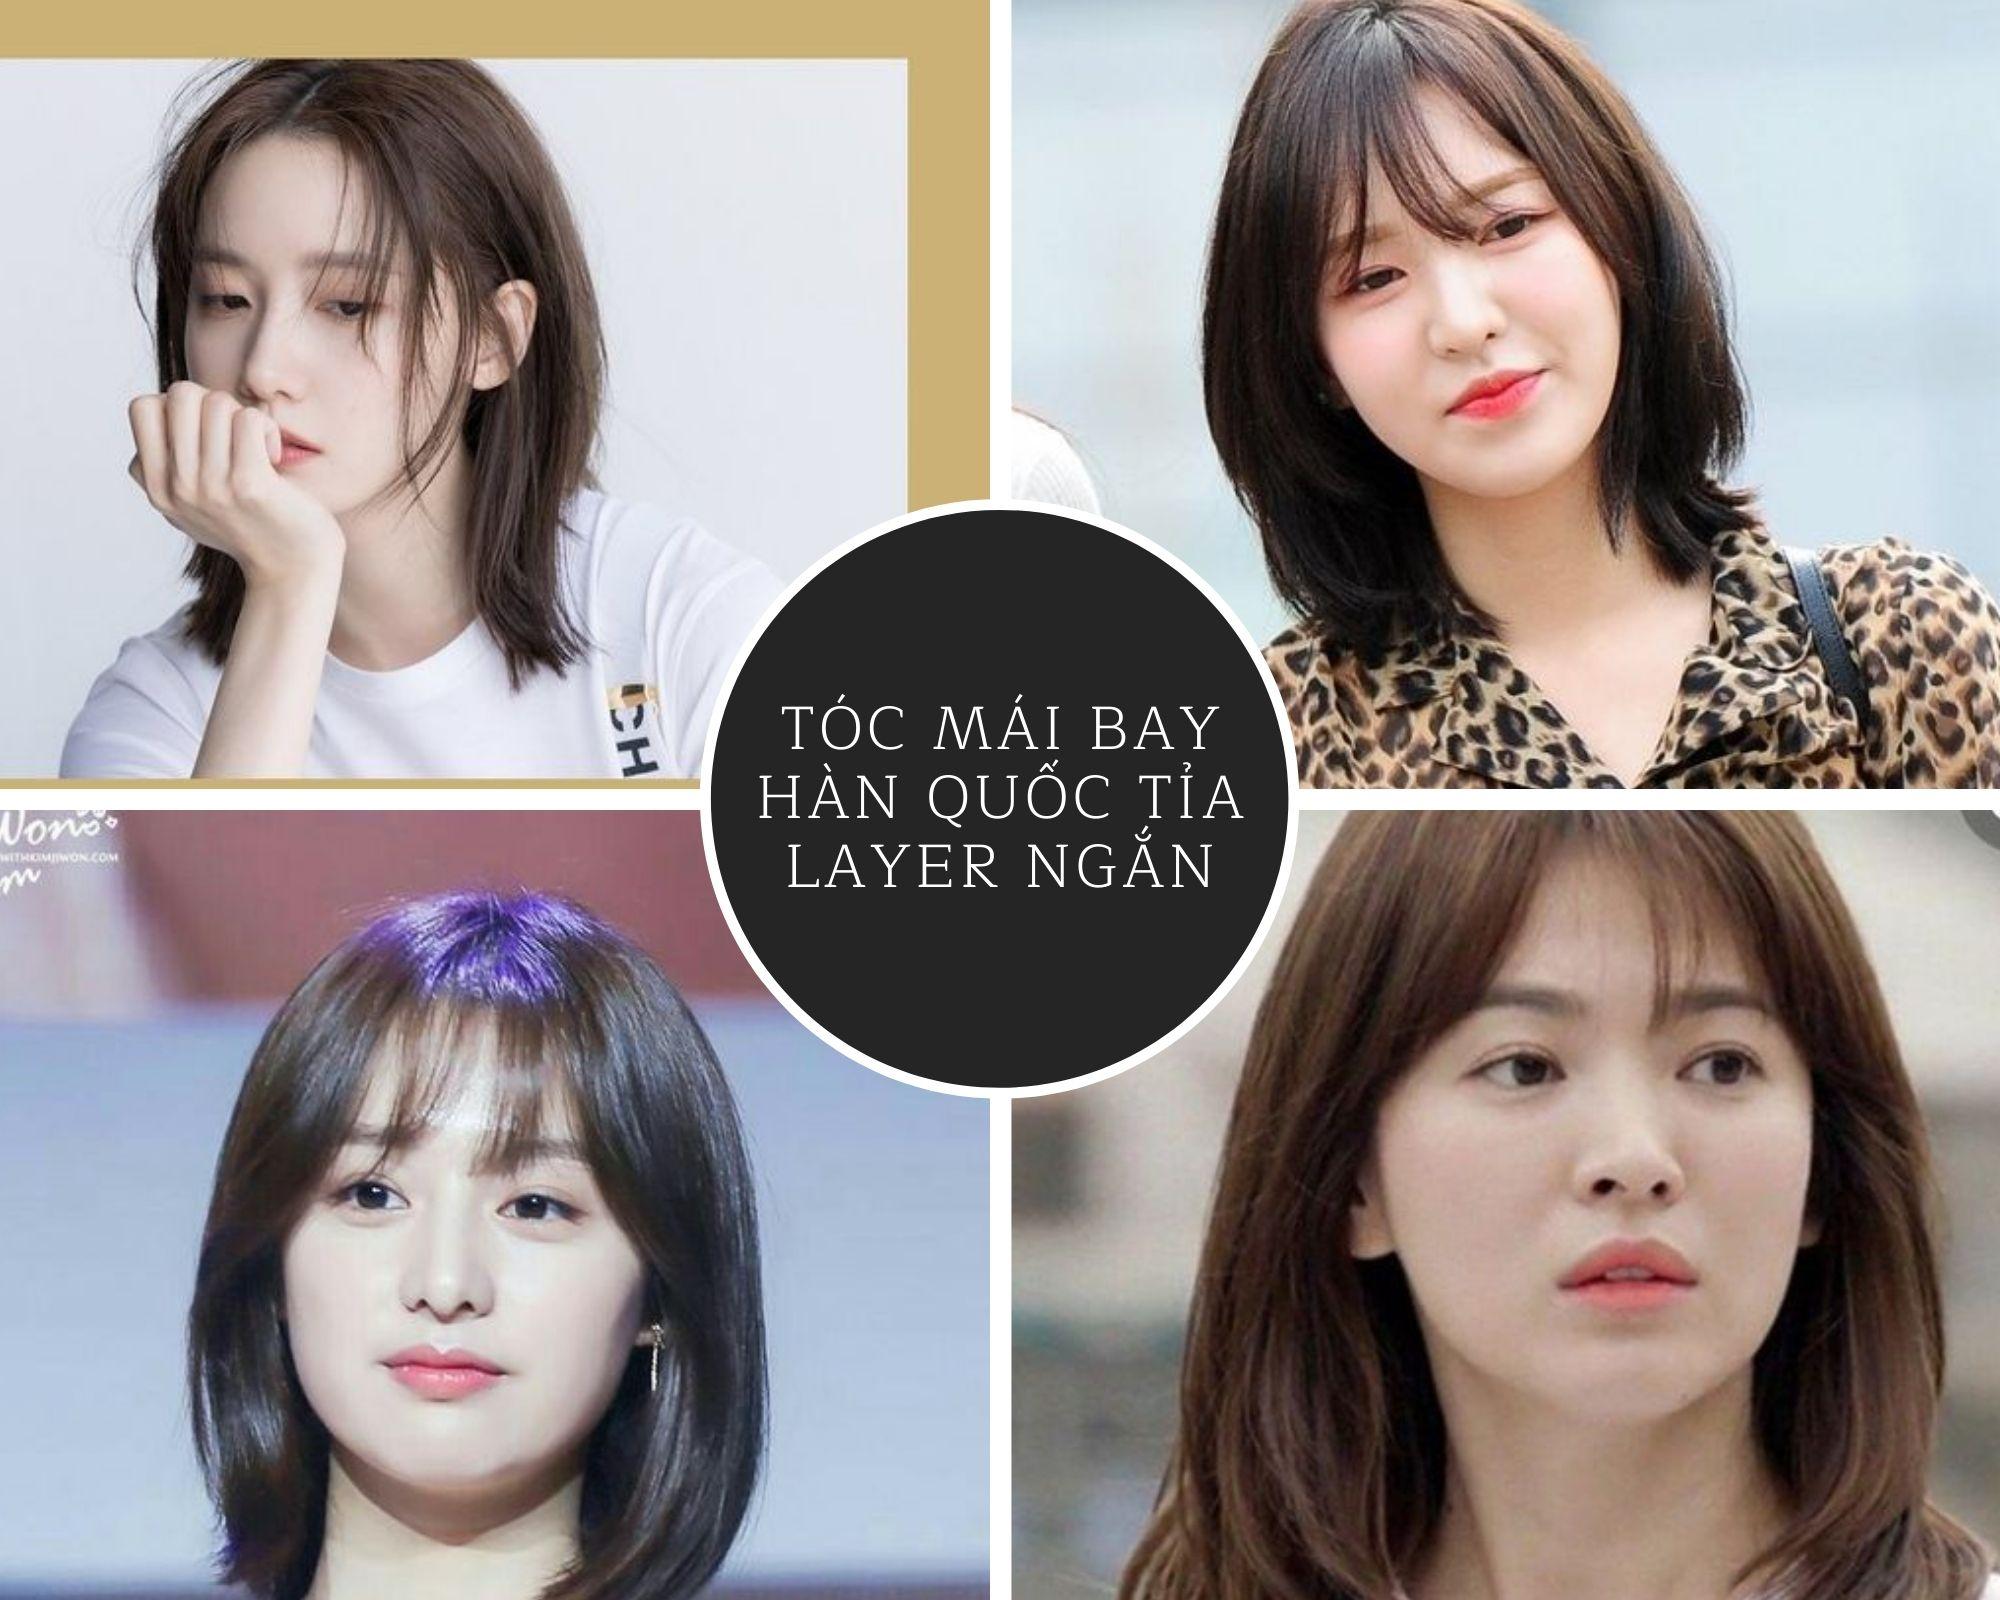 Tóc mái bay Hàn Quốc: Top 10 kiểu đẹp trẻ trung năng động hot nhất hiện nay - ảnh 9